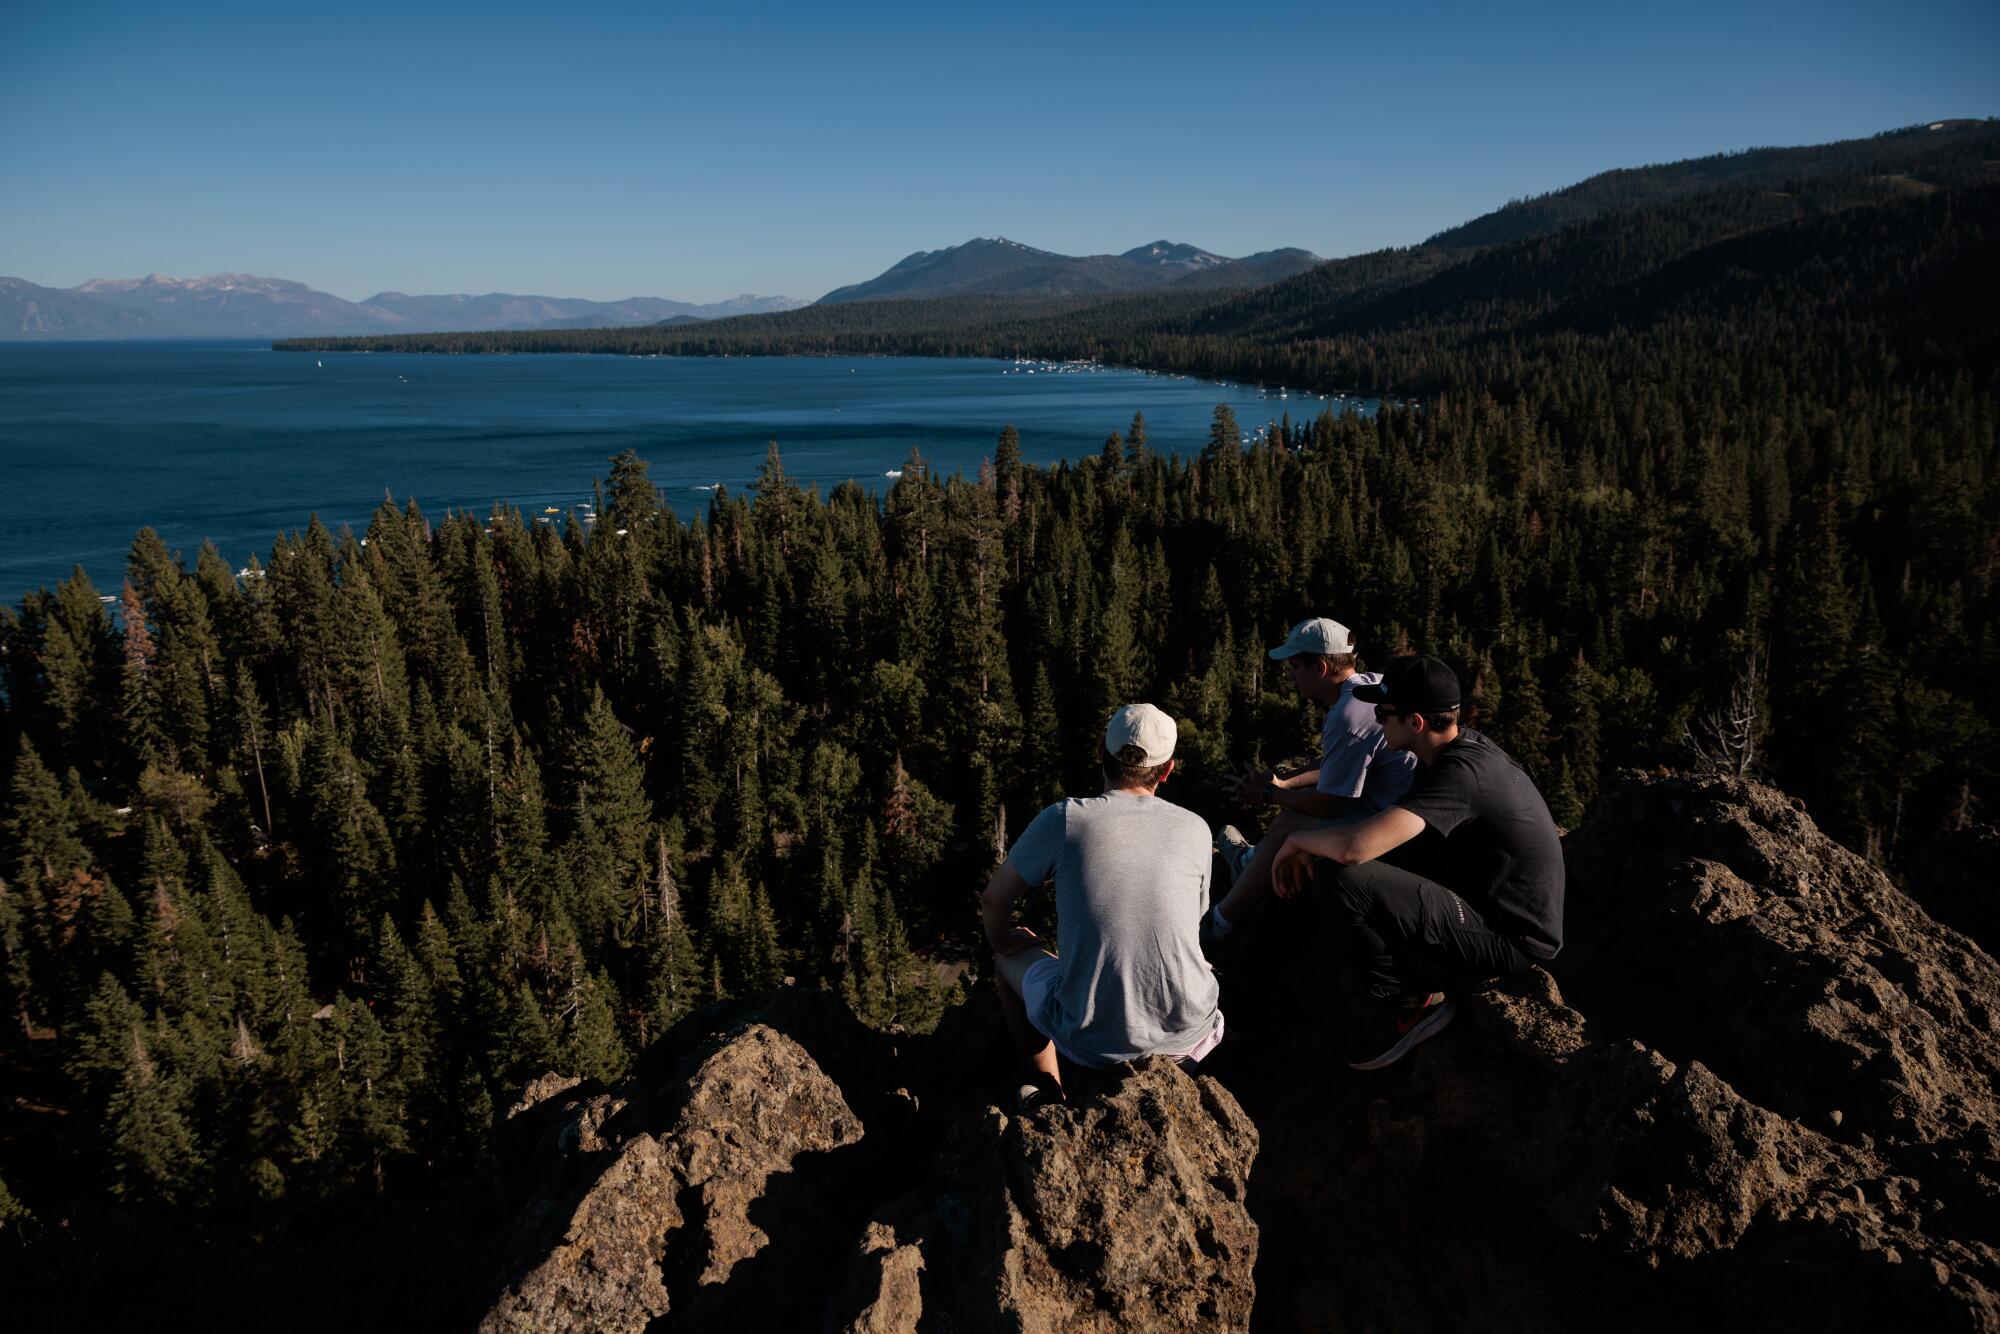 Üç kişi bir kayanın üzerine tünemiş ve kozalaklı ağaçların üzerinden dağ gölüne doğru bakıyor.